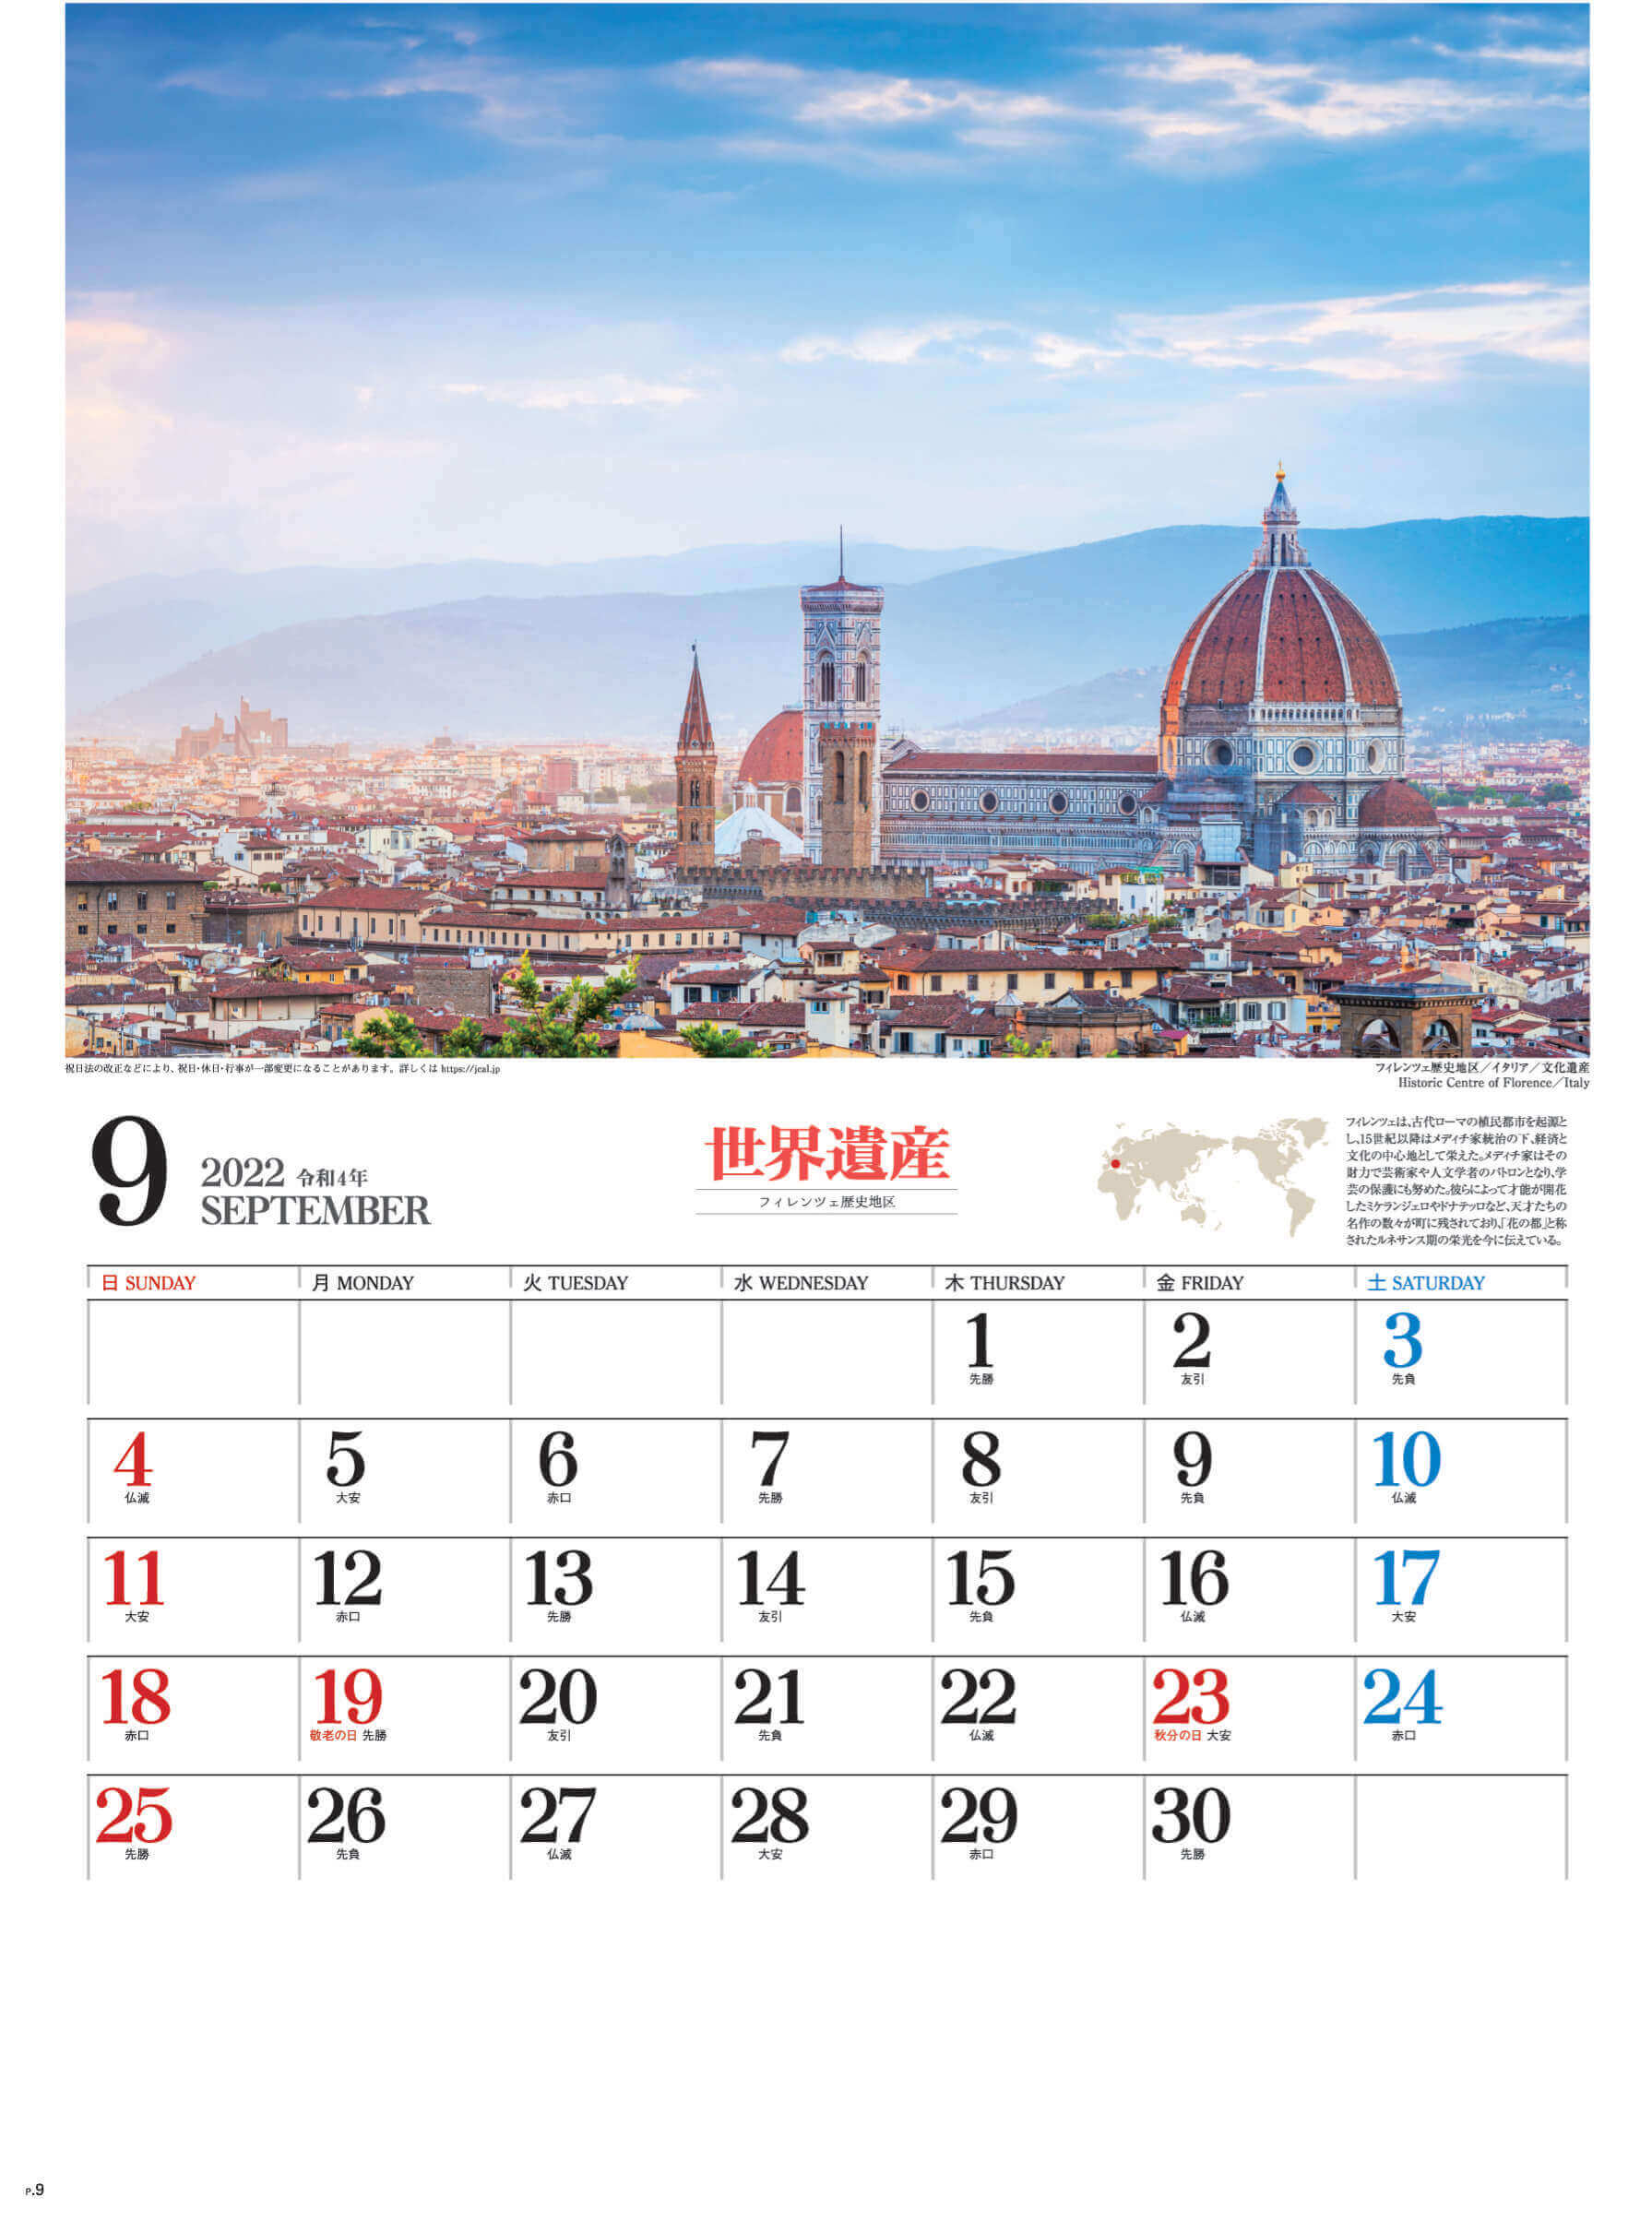 9月 フィレンツェ歴史地区 イタリア ユネスコ世界遺産 2022年カレンダーの画像